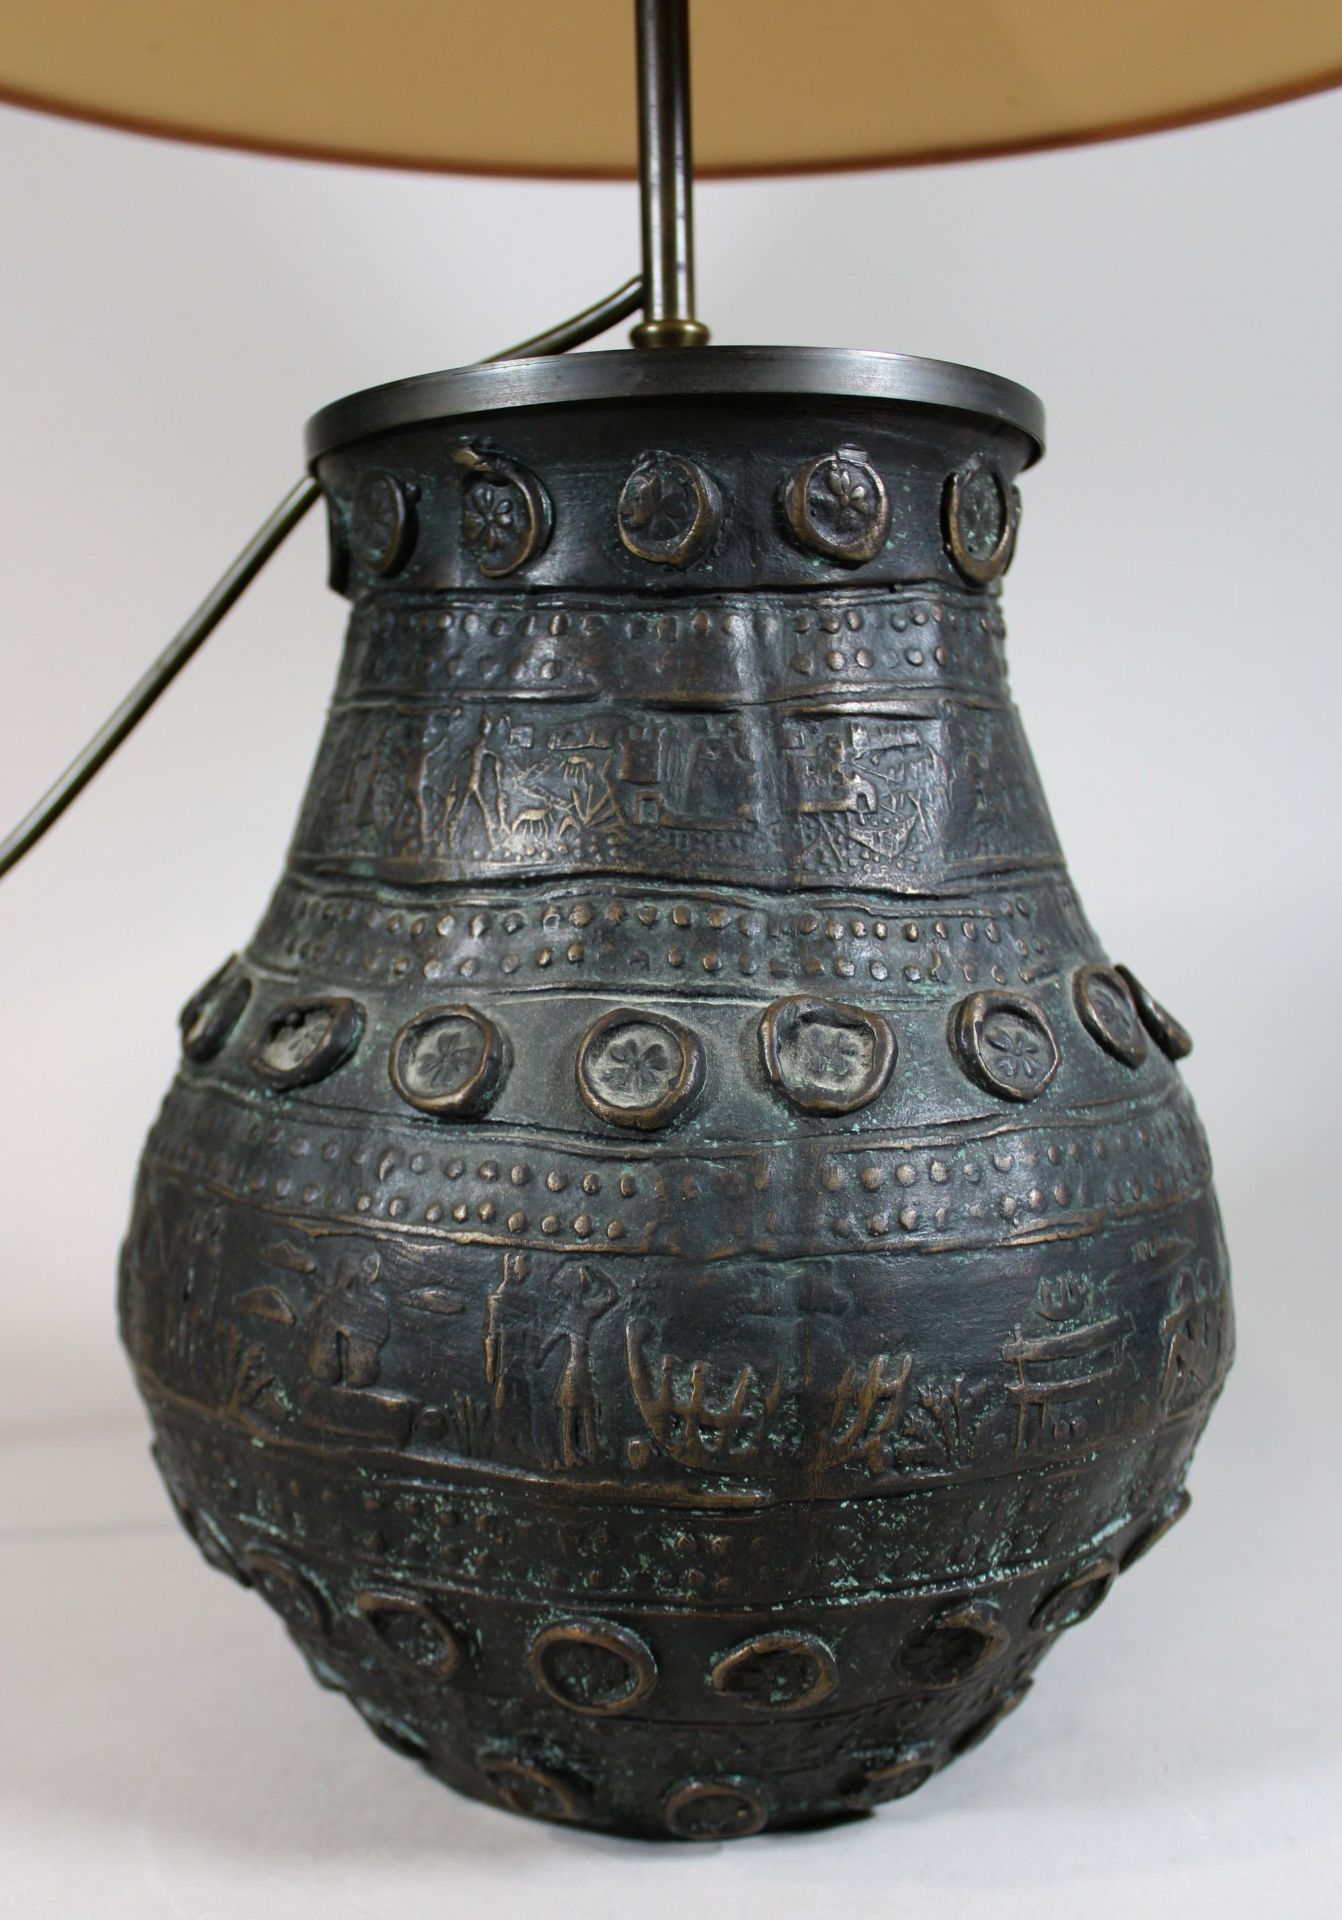 Bronzelampe, wohl 18. Jh., Ornamentik und figürliche Darstellung, H.: 60 cm. Guter, altersbedingter - Bild 2 aus 2